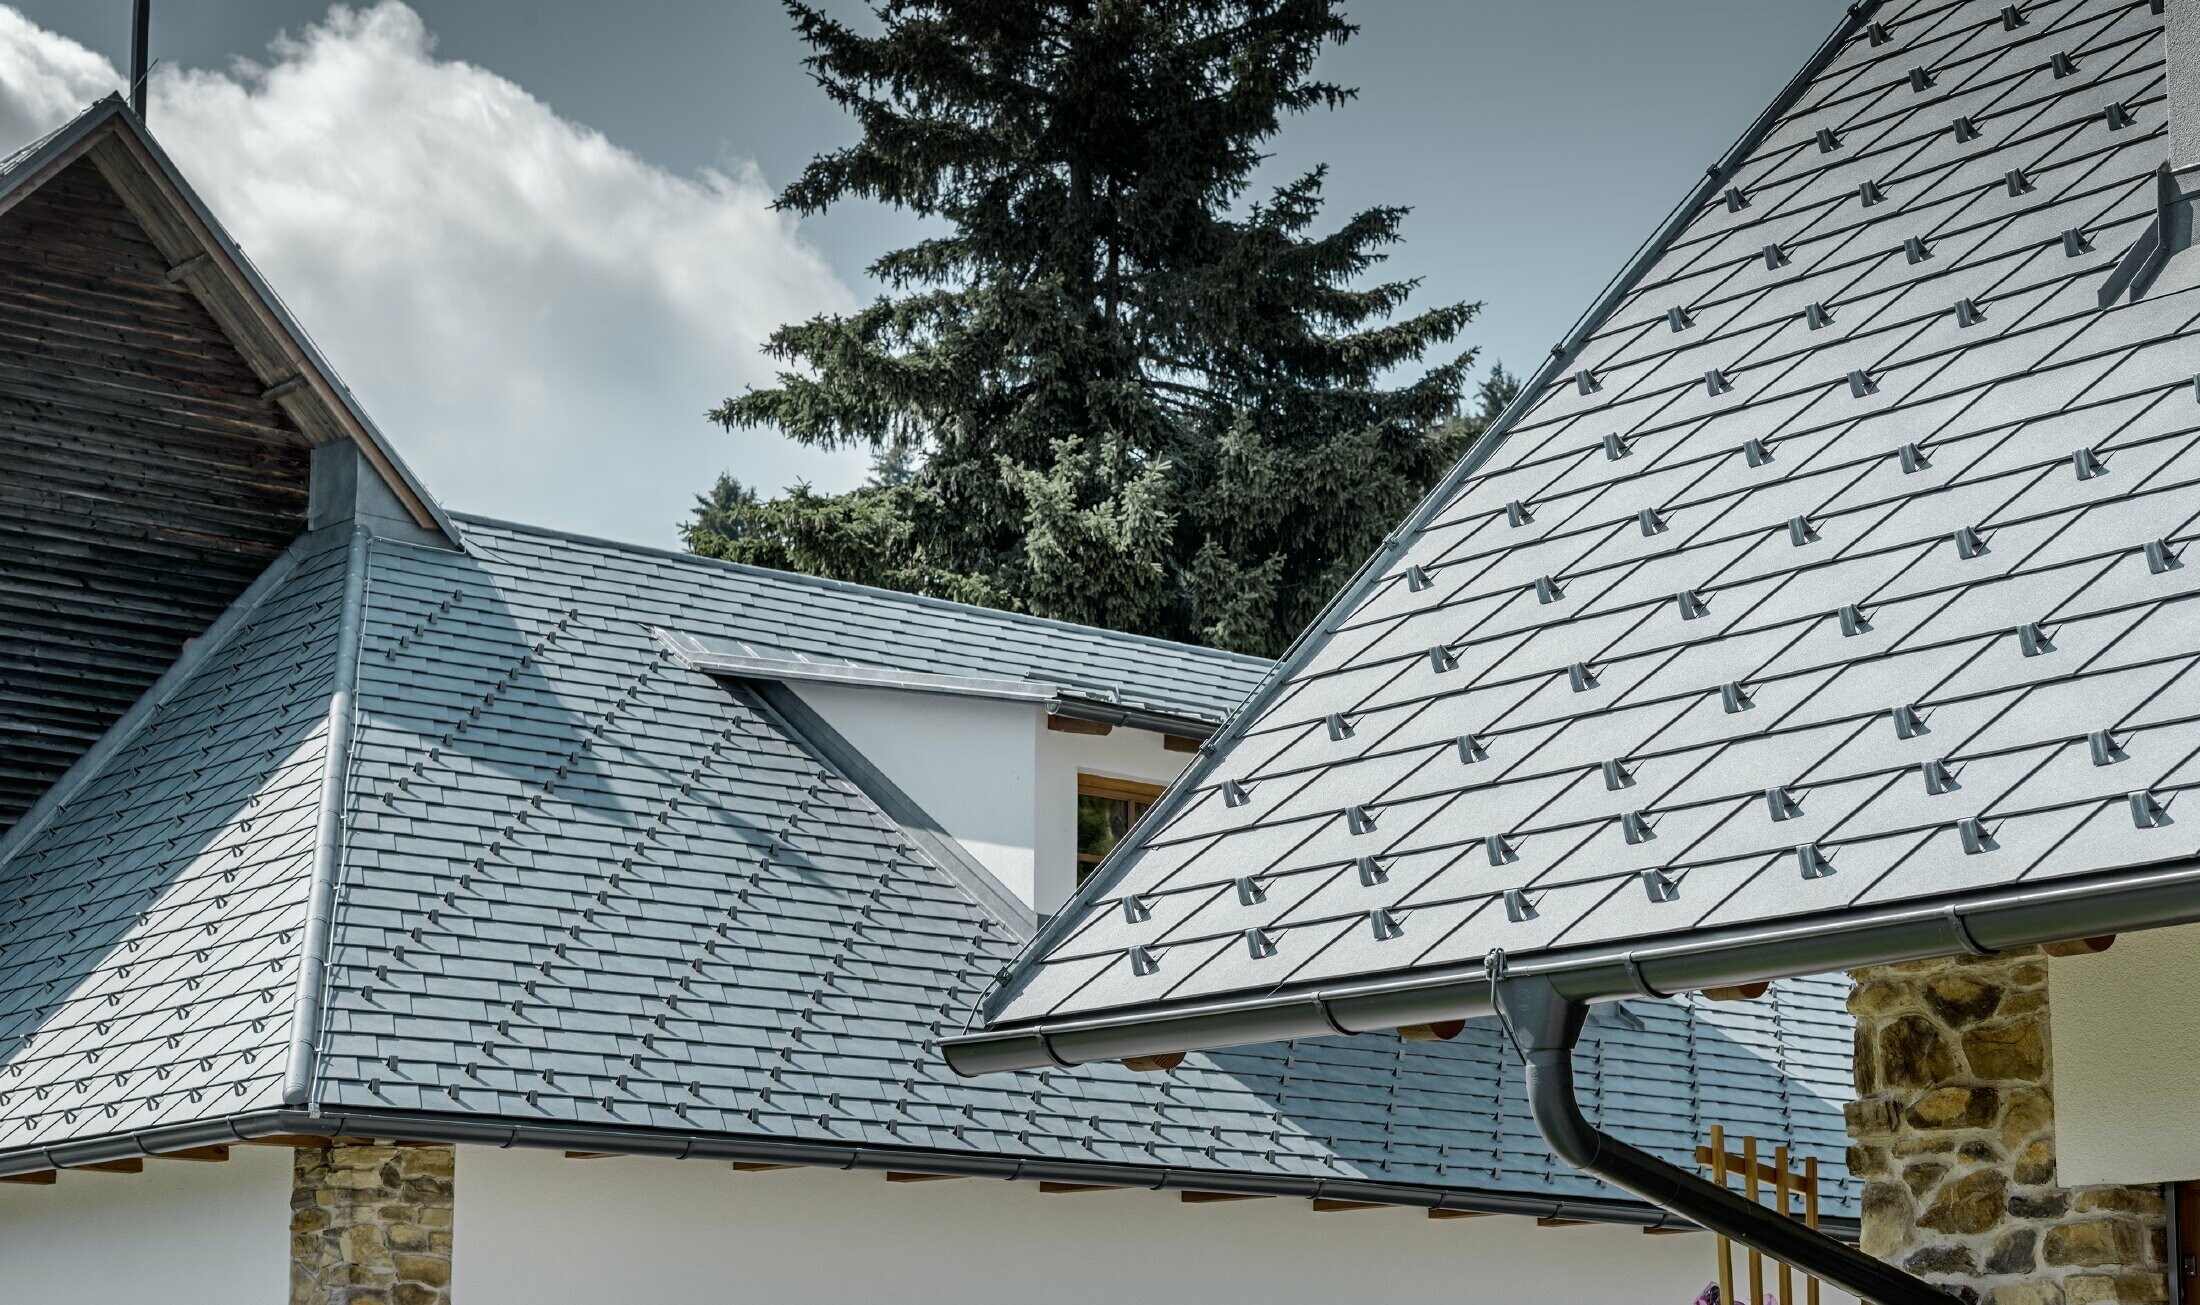 Detailopname van een aluminium dakbedekking van PREFA; dakschindel in steengrijs met de aluminium dakgoot in antraciet van PREFA; op de achtergrond herkent men een dakkapel met lessenaarsdak met staand felsdak. De gevel is wit met ingewerkte steenelementen.